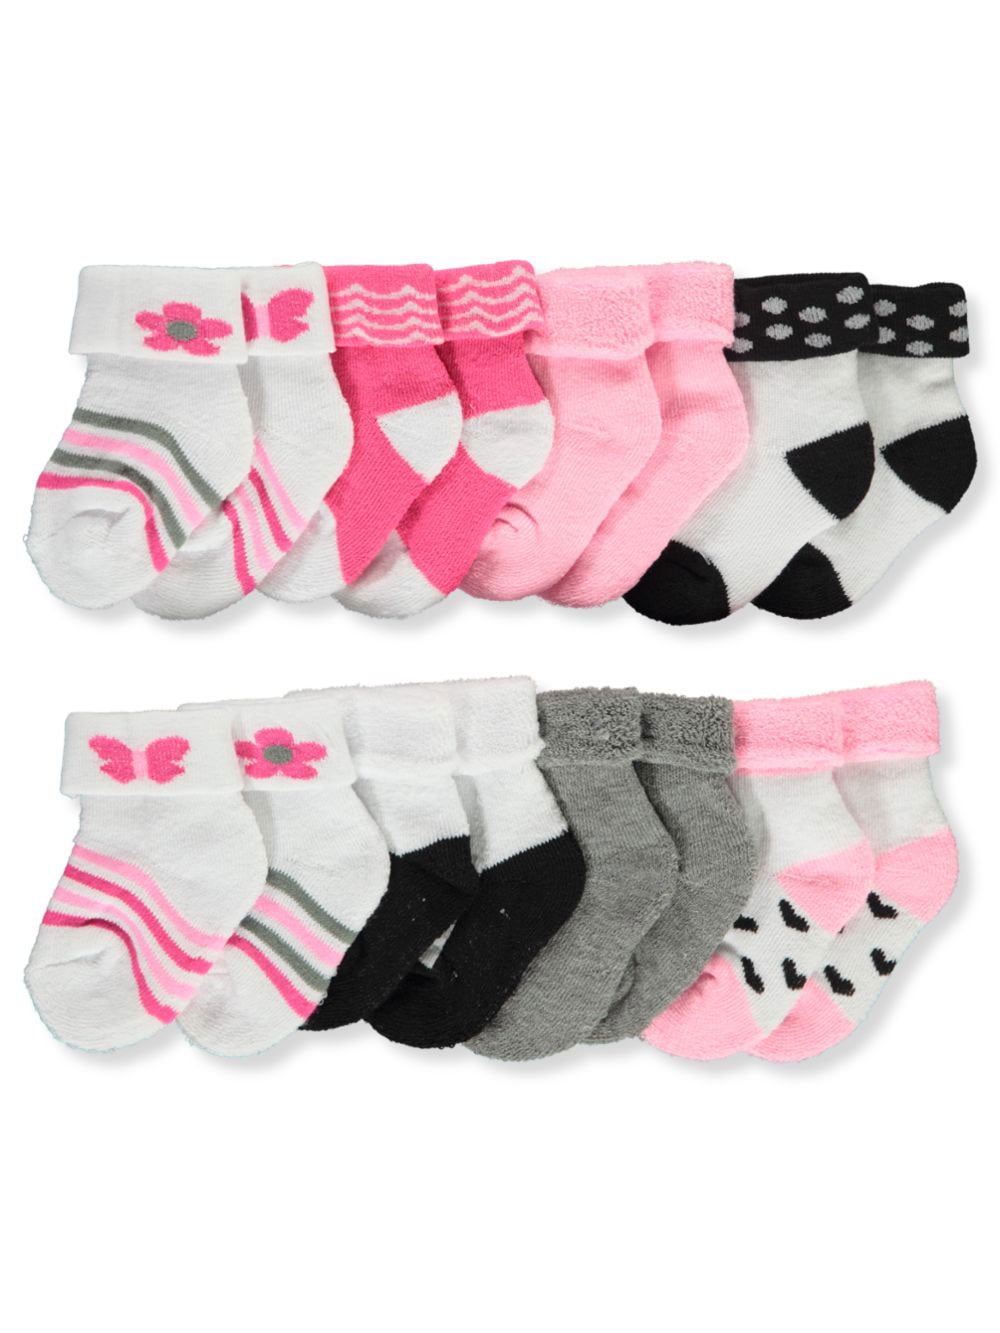 3 Pairs Baby Girls Heart & Butterfly Socks Pack Of 3 Socks 0-0 0-2.5 3.5-5 4B609 